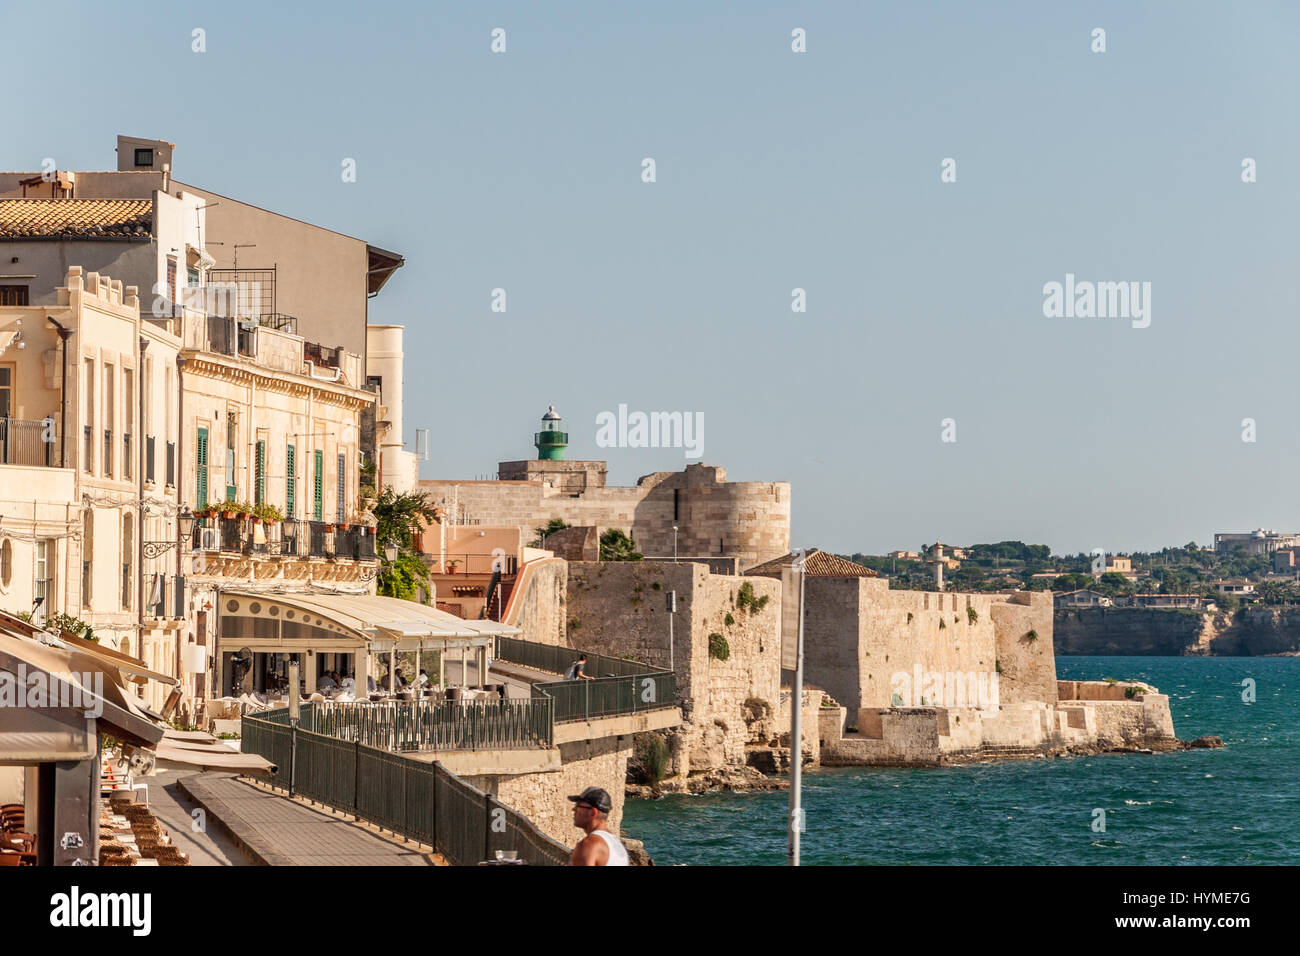 SYRACUSE, ITALY - SEPTEMBER 14, 2015: Coast of Ortigia island at city of Syracuse, Sicily, Italy Stock Photo